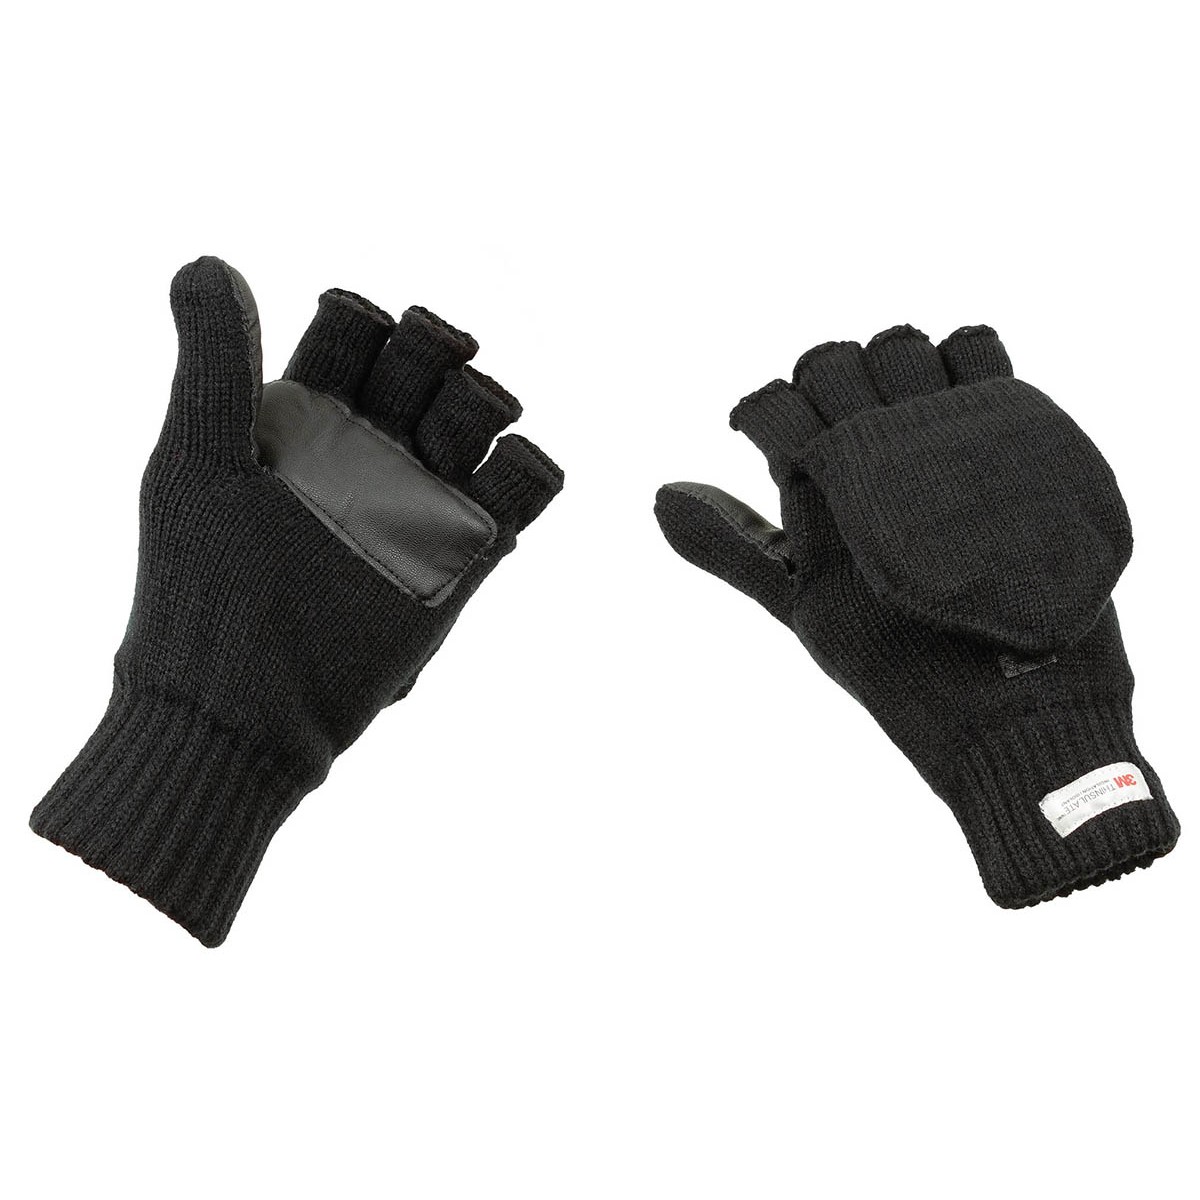 Pletené rukavice bez prstů s podšívkou MFH Thinsulate - černé, M